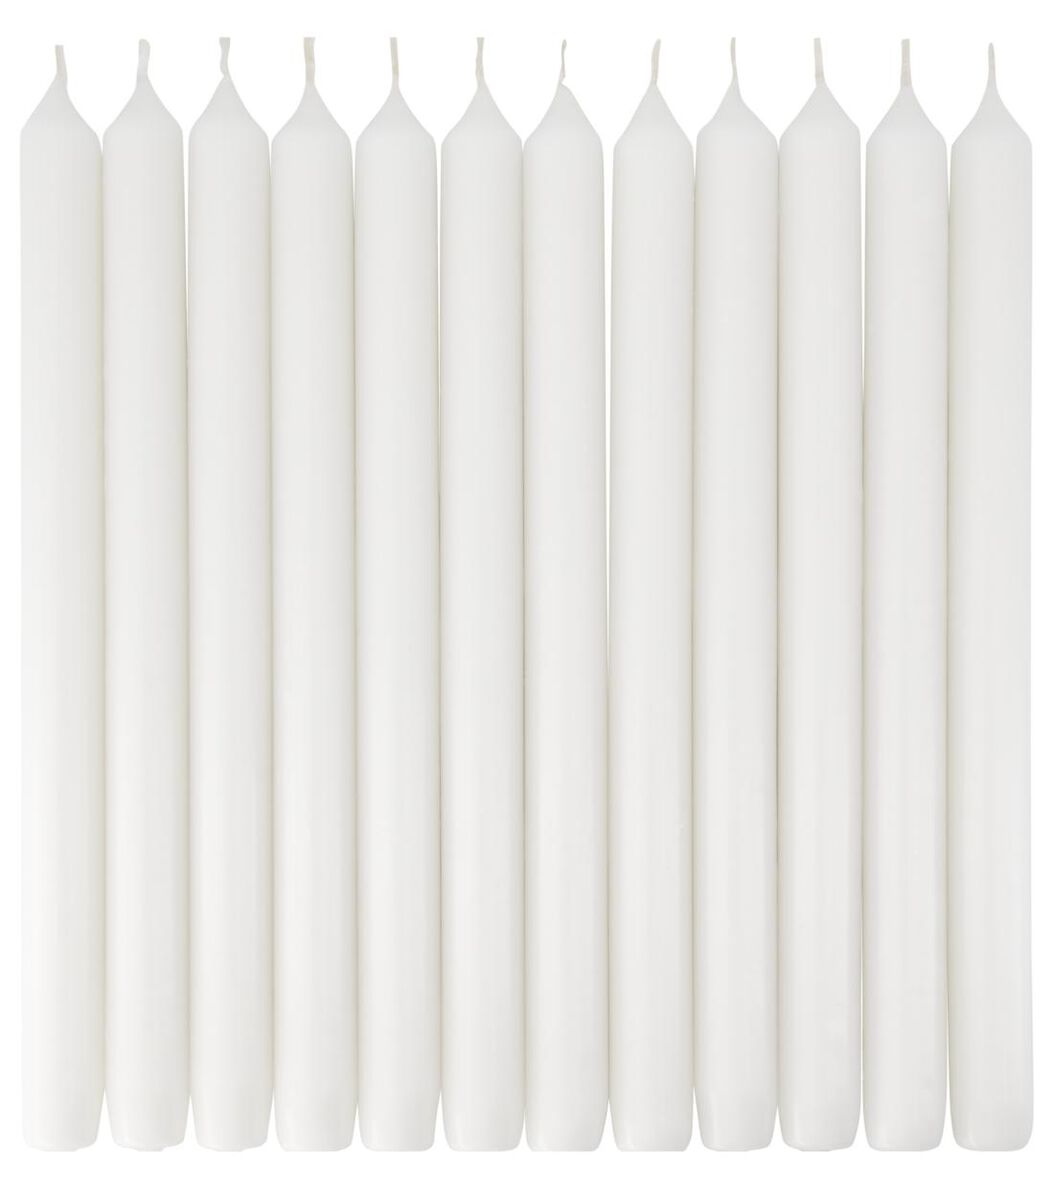 12er-Pack lange Haushaltskerzen, Ø 2.2 x 29 cm, weiß weiß 2.2 x 29 - 13503050 - HEMA